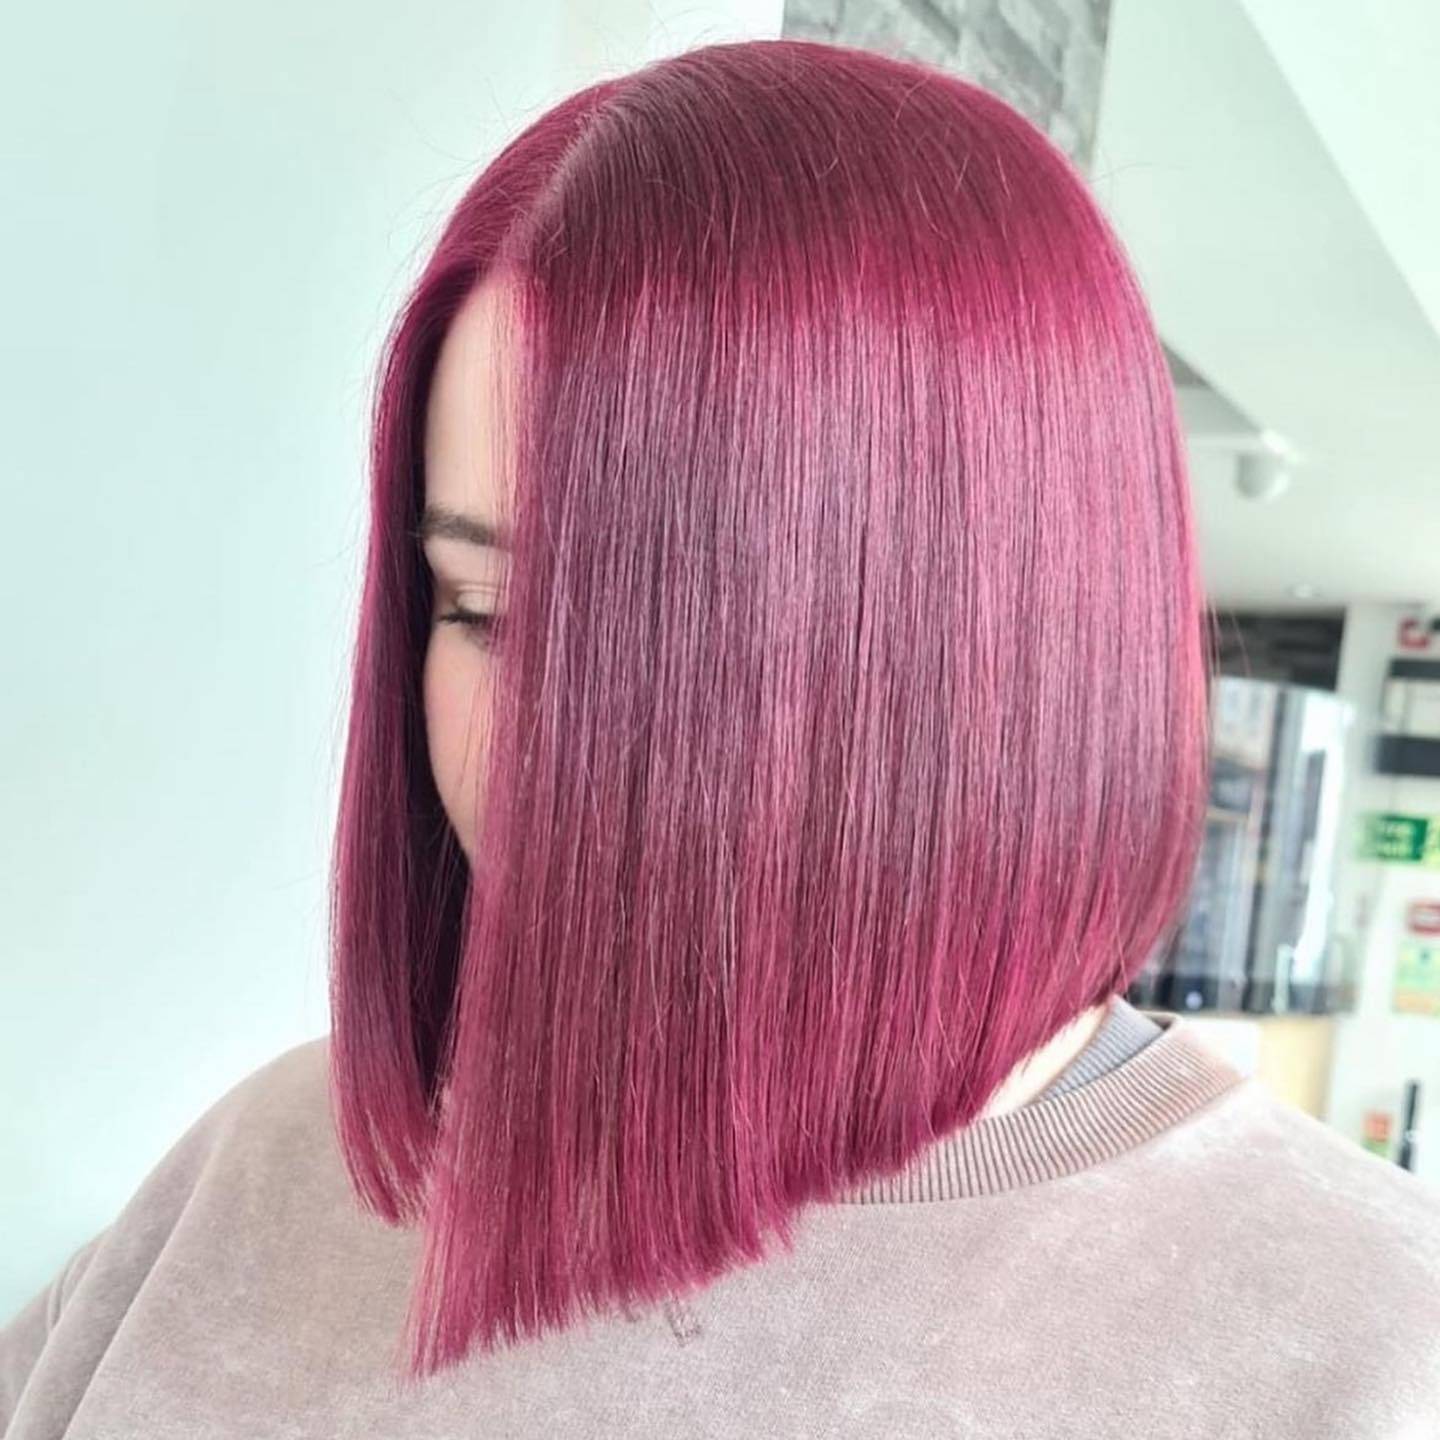 Burgundy hair color 265 burgundy hair color | burgundy hair color for women | burgundy hair color highlights Burgundy Hair Color